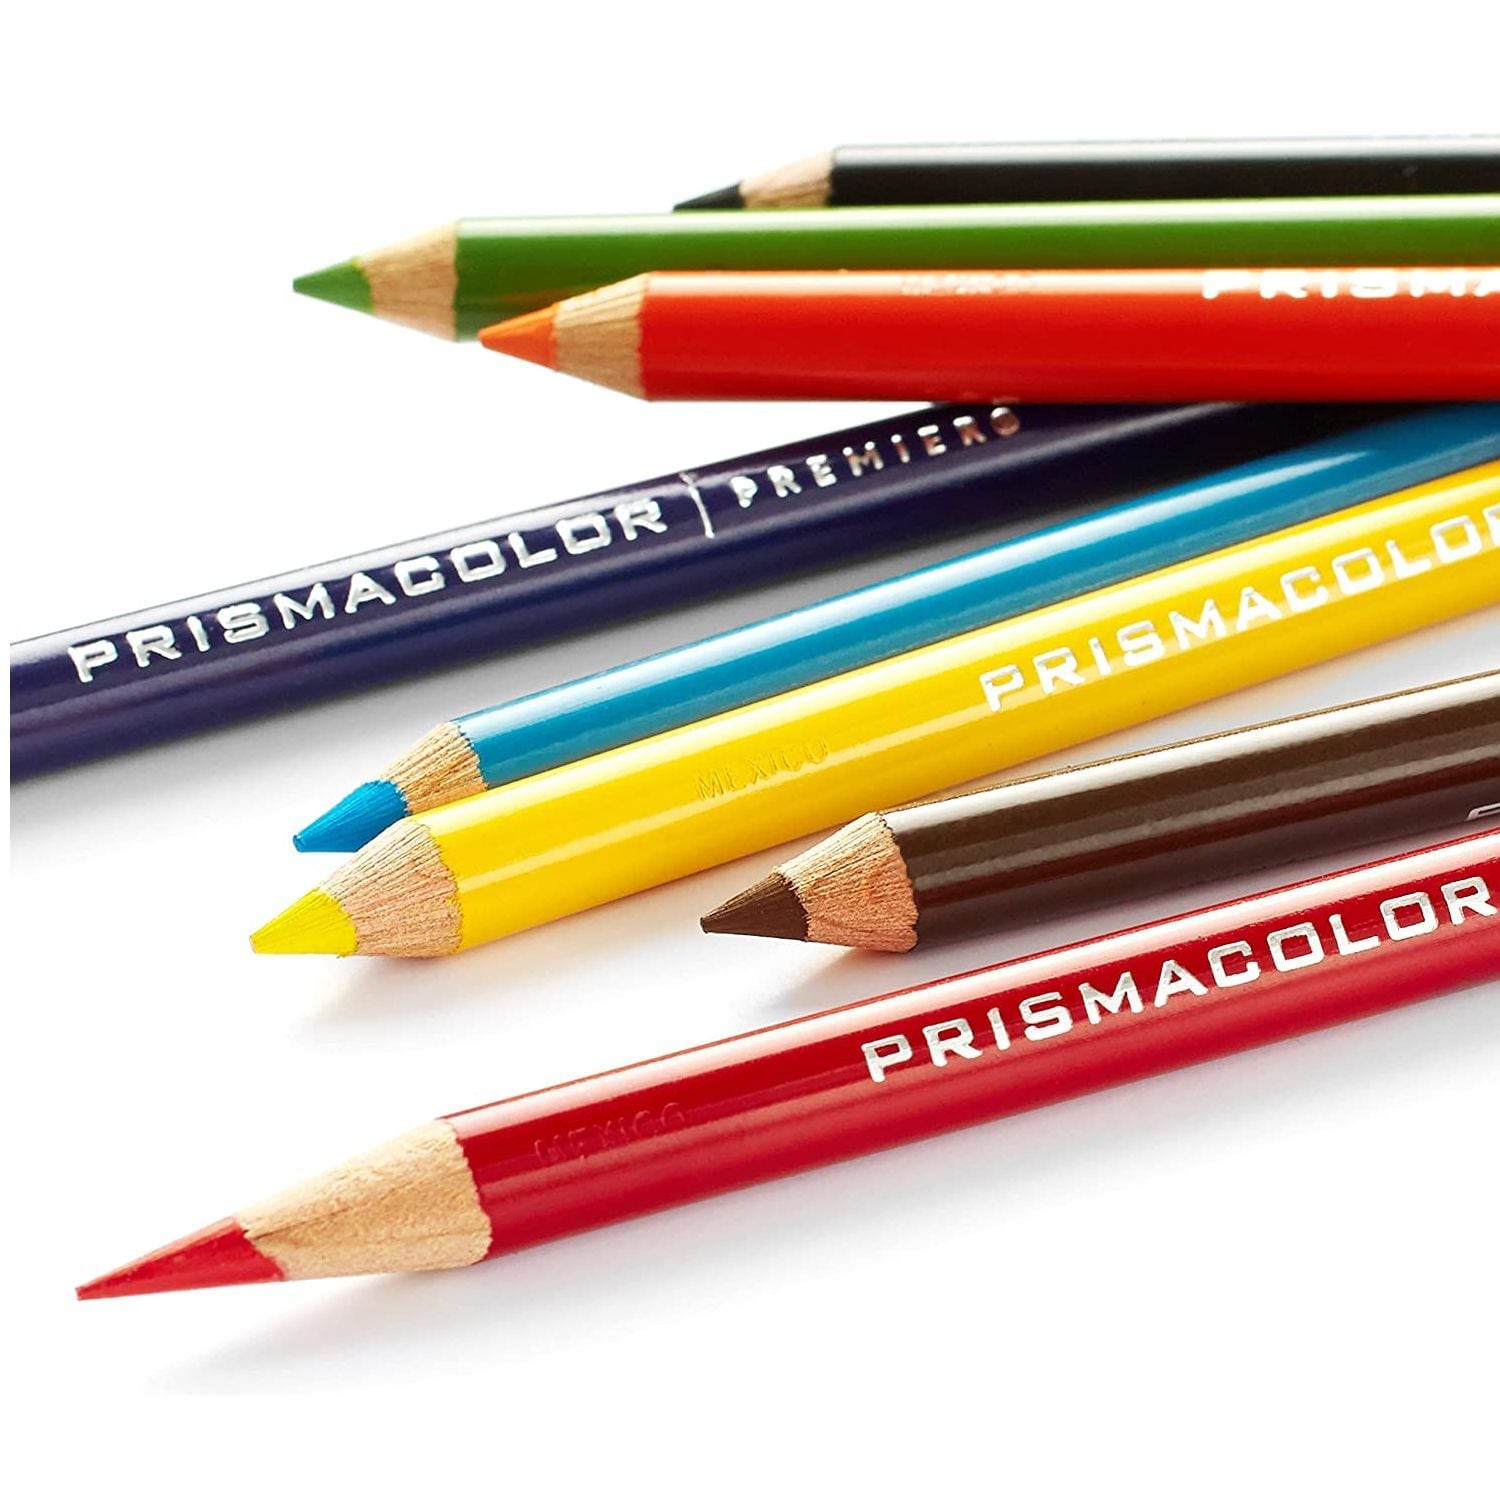 色鉛筆 プリズマカラー 【36色】 92885T プレミアカラー ソフトコア